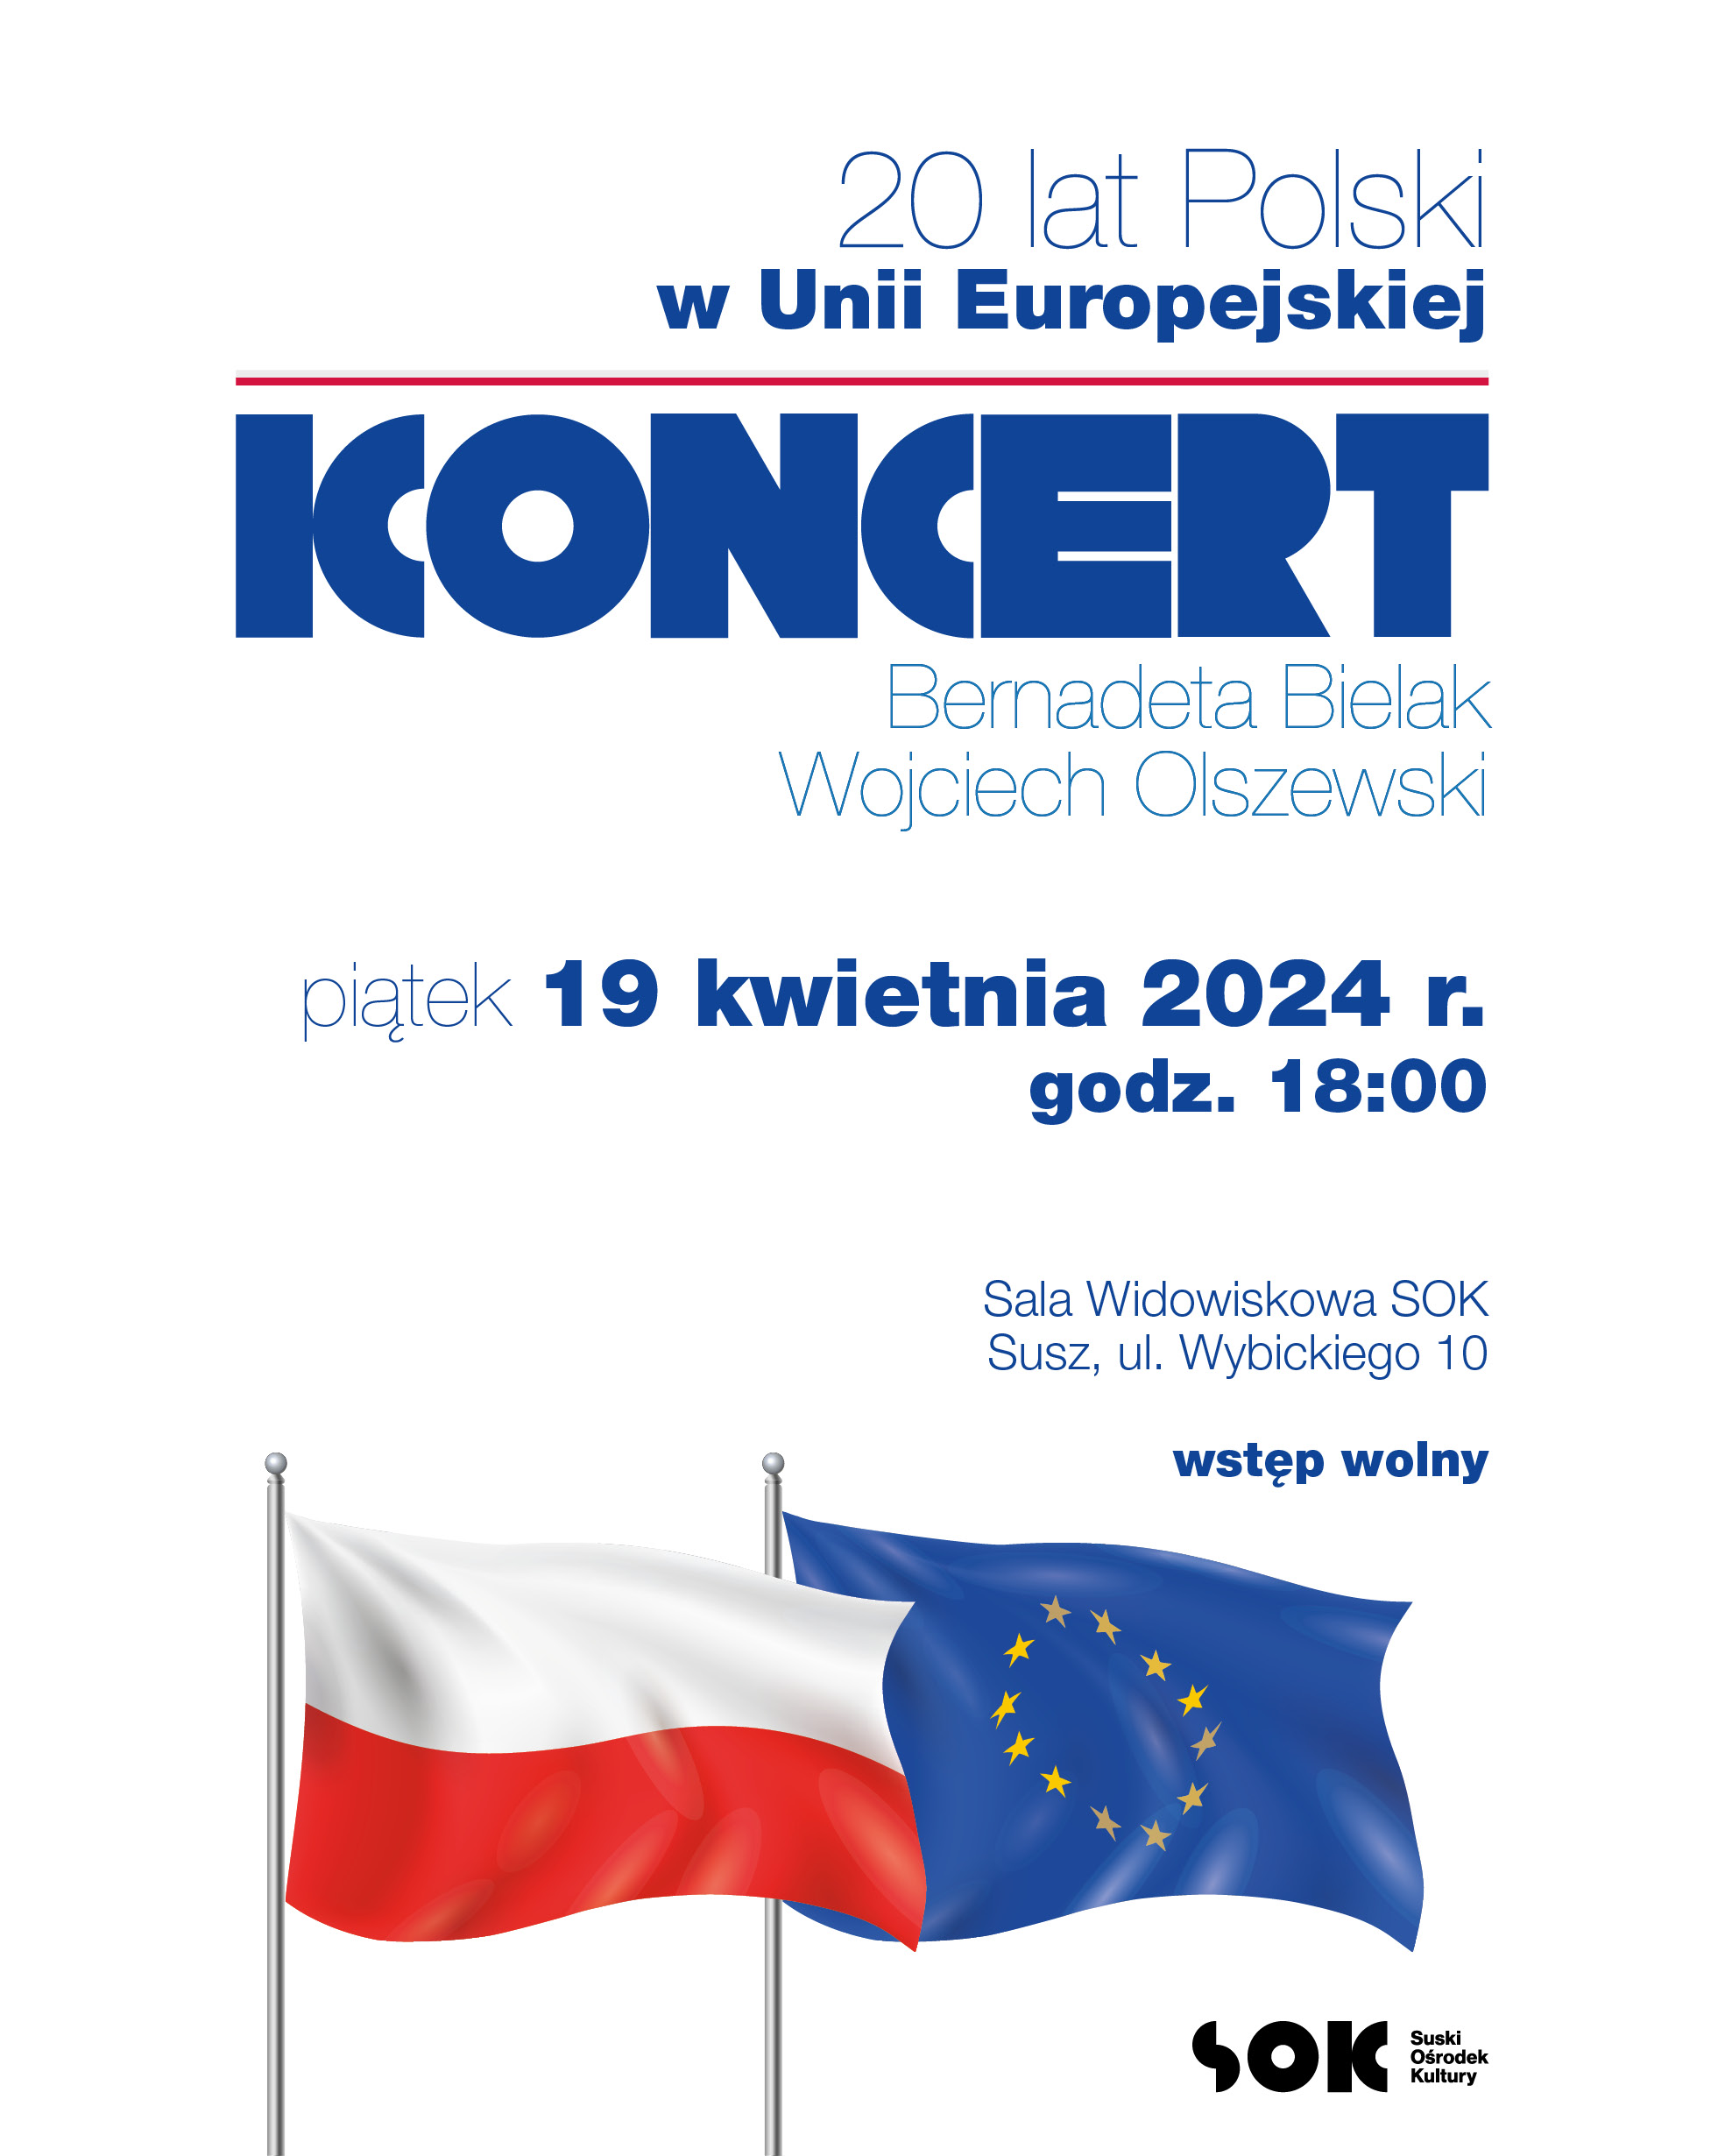 Koncert z okazji 20 lat Polski w Unii Europejskiej!